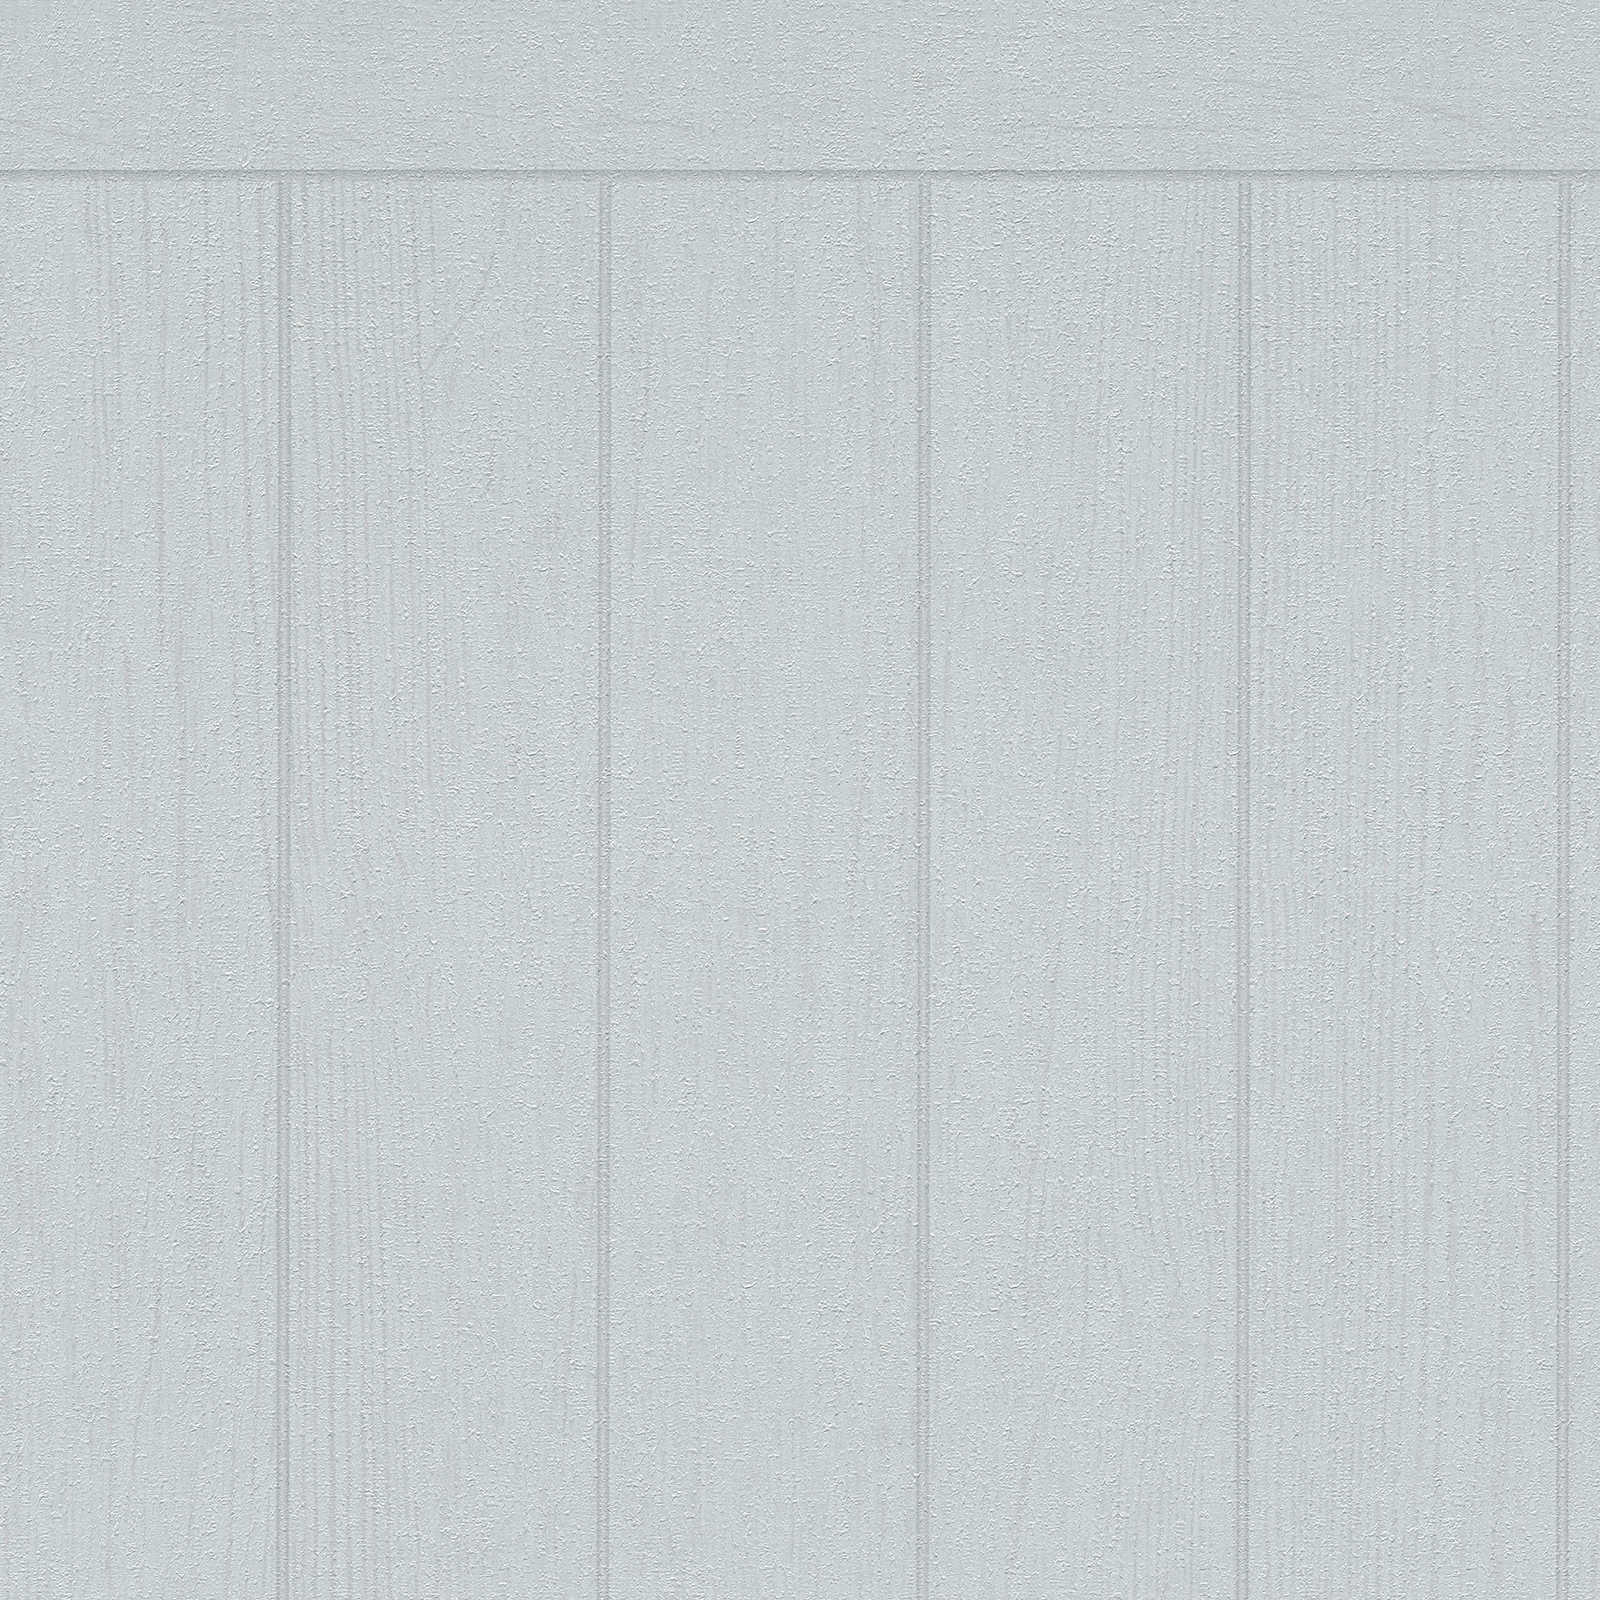 Vlies wandpaneel in houtbalkenlook - grijs
